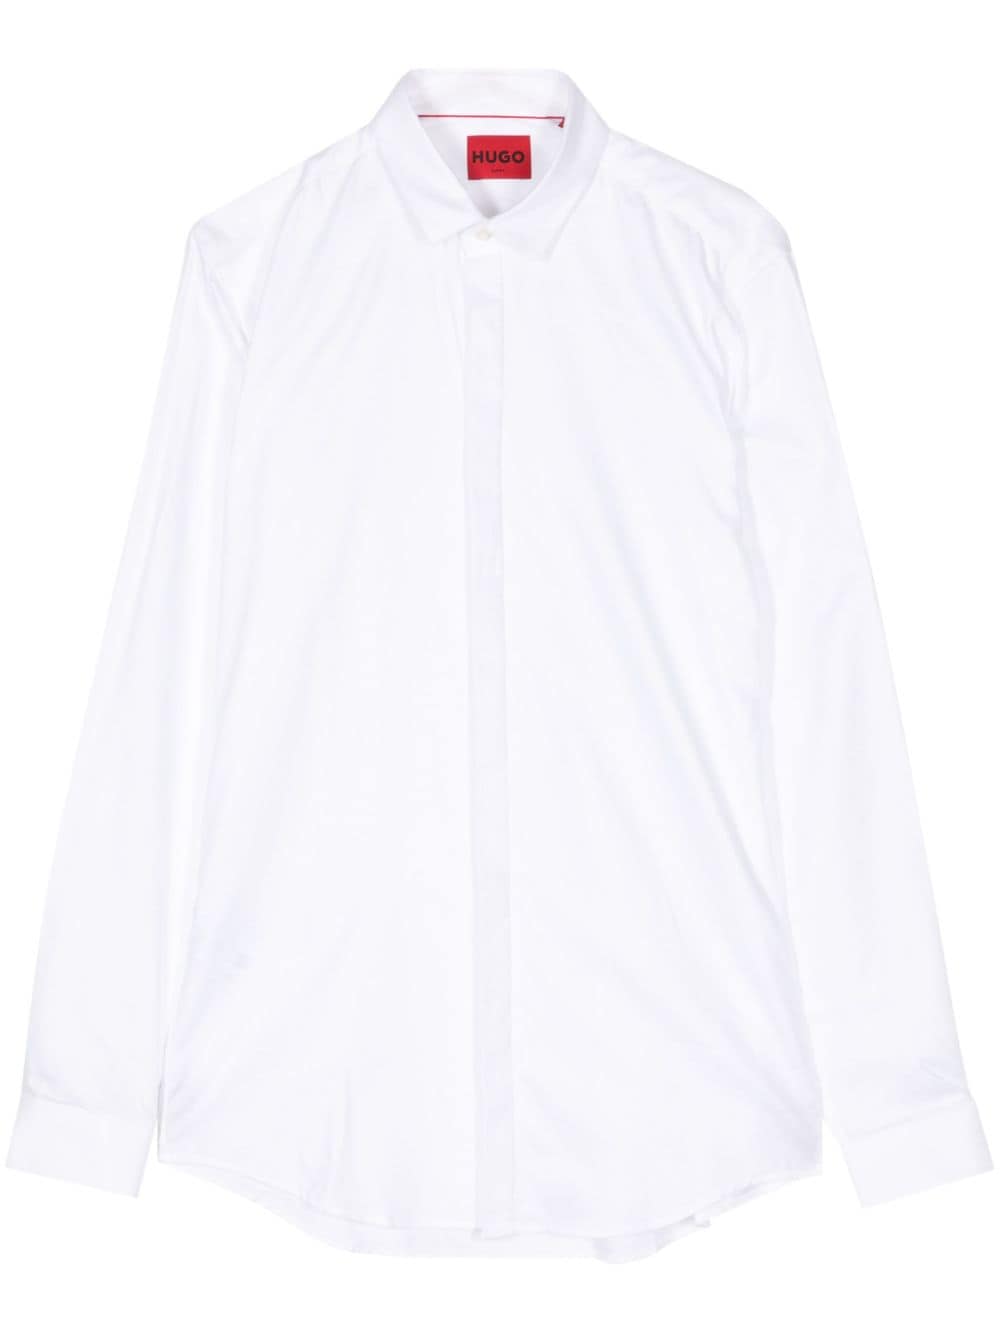 HUGO plain cotton shirt - White von HUGO